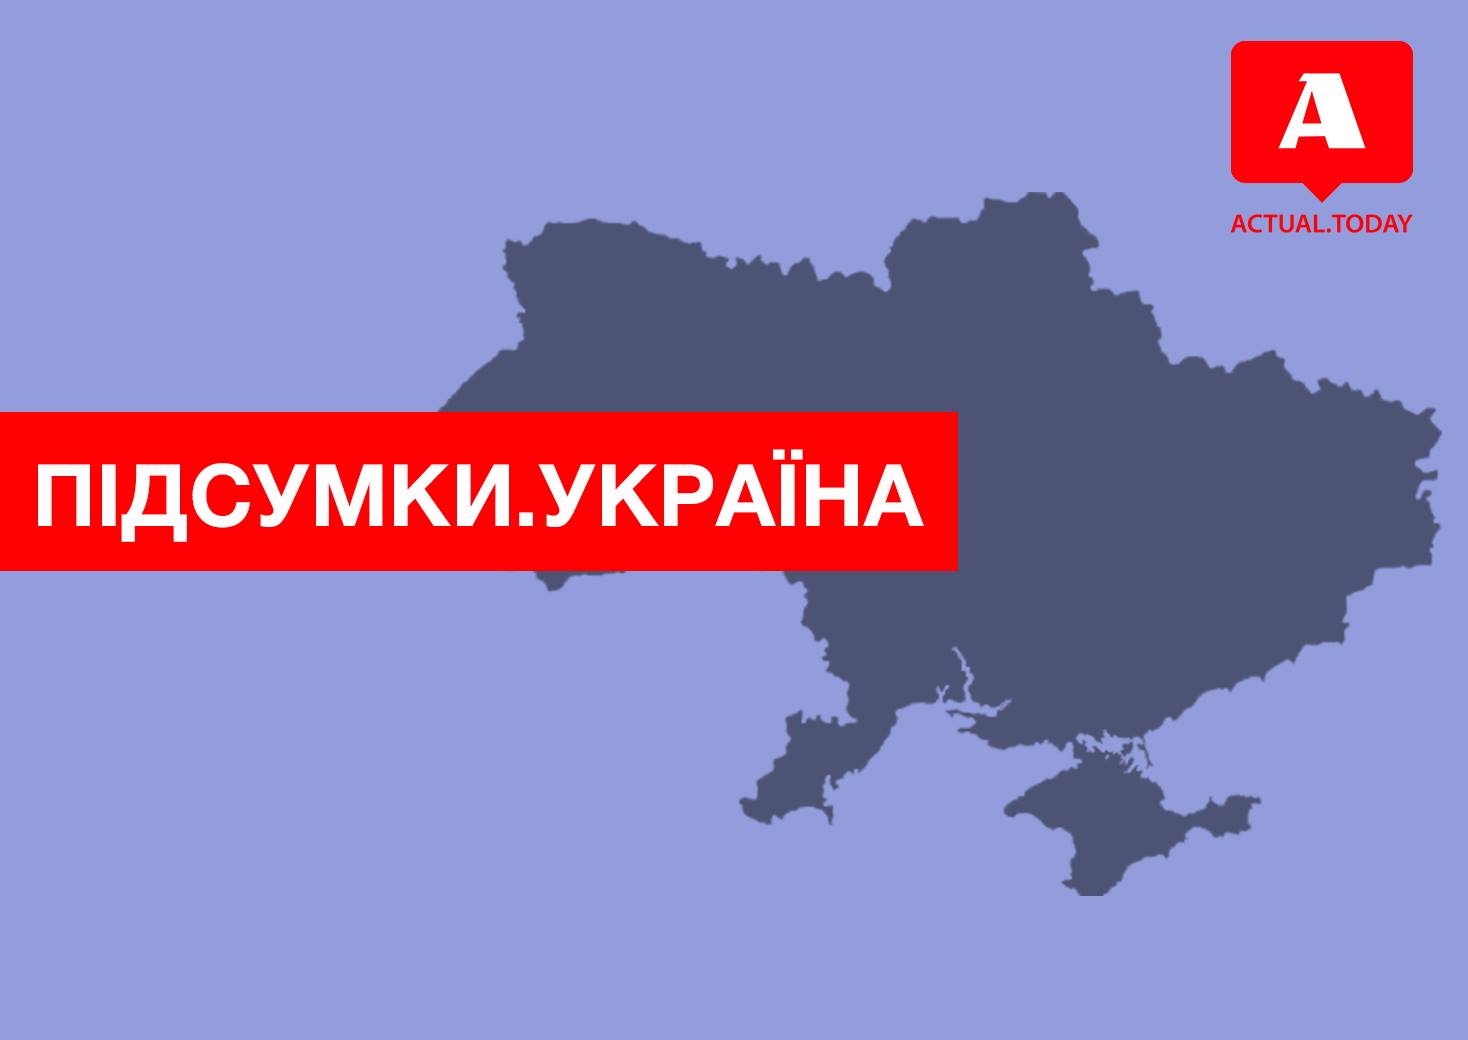 Шины под домом Порошенко, суд вынес приговор исполнителям по делу Гандзюк, положения про импичмент – главные новости Украины за четверг